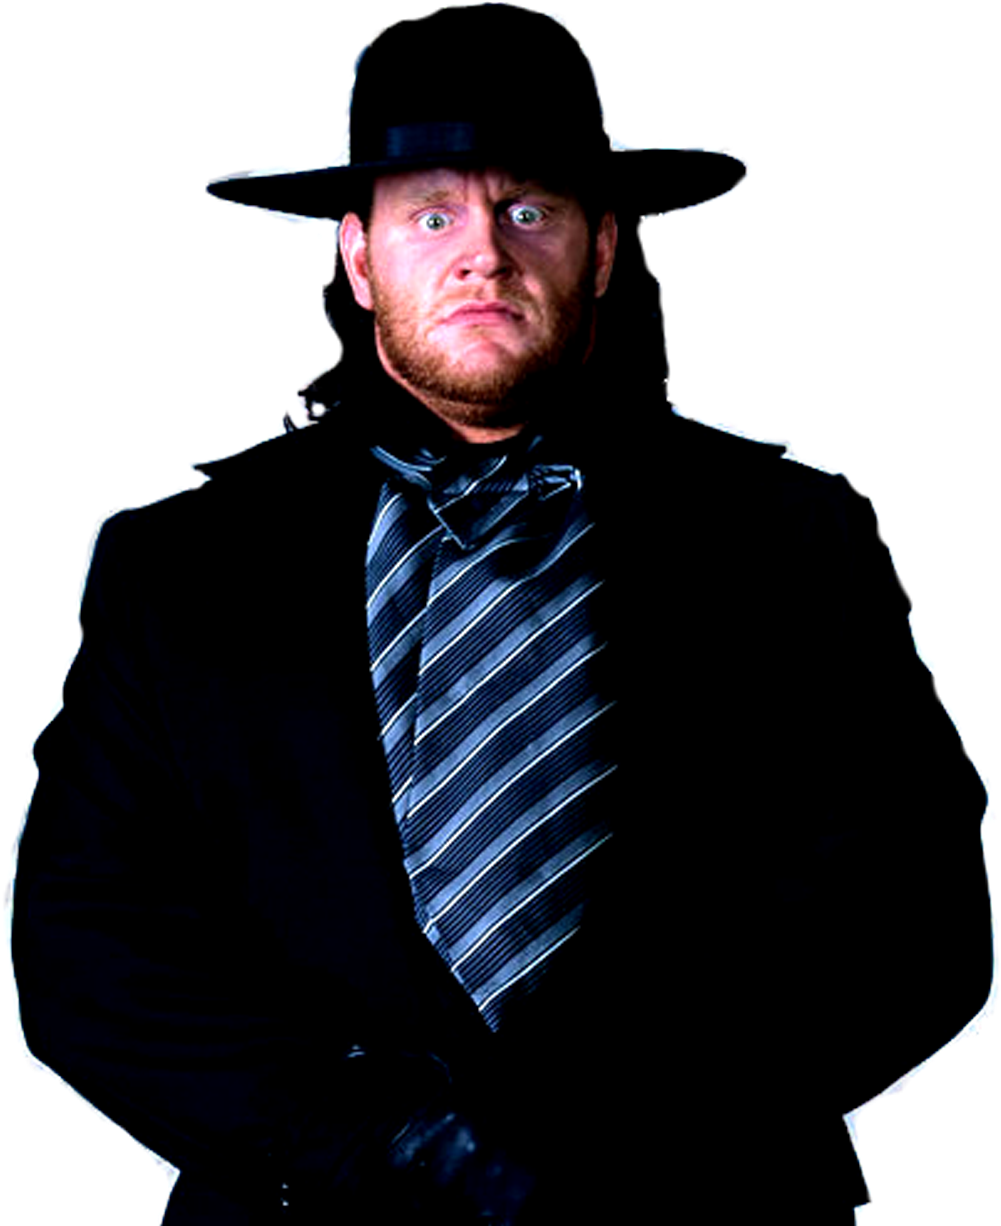 Undertaker Wrestling Legend Portrait PNG image